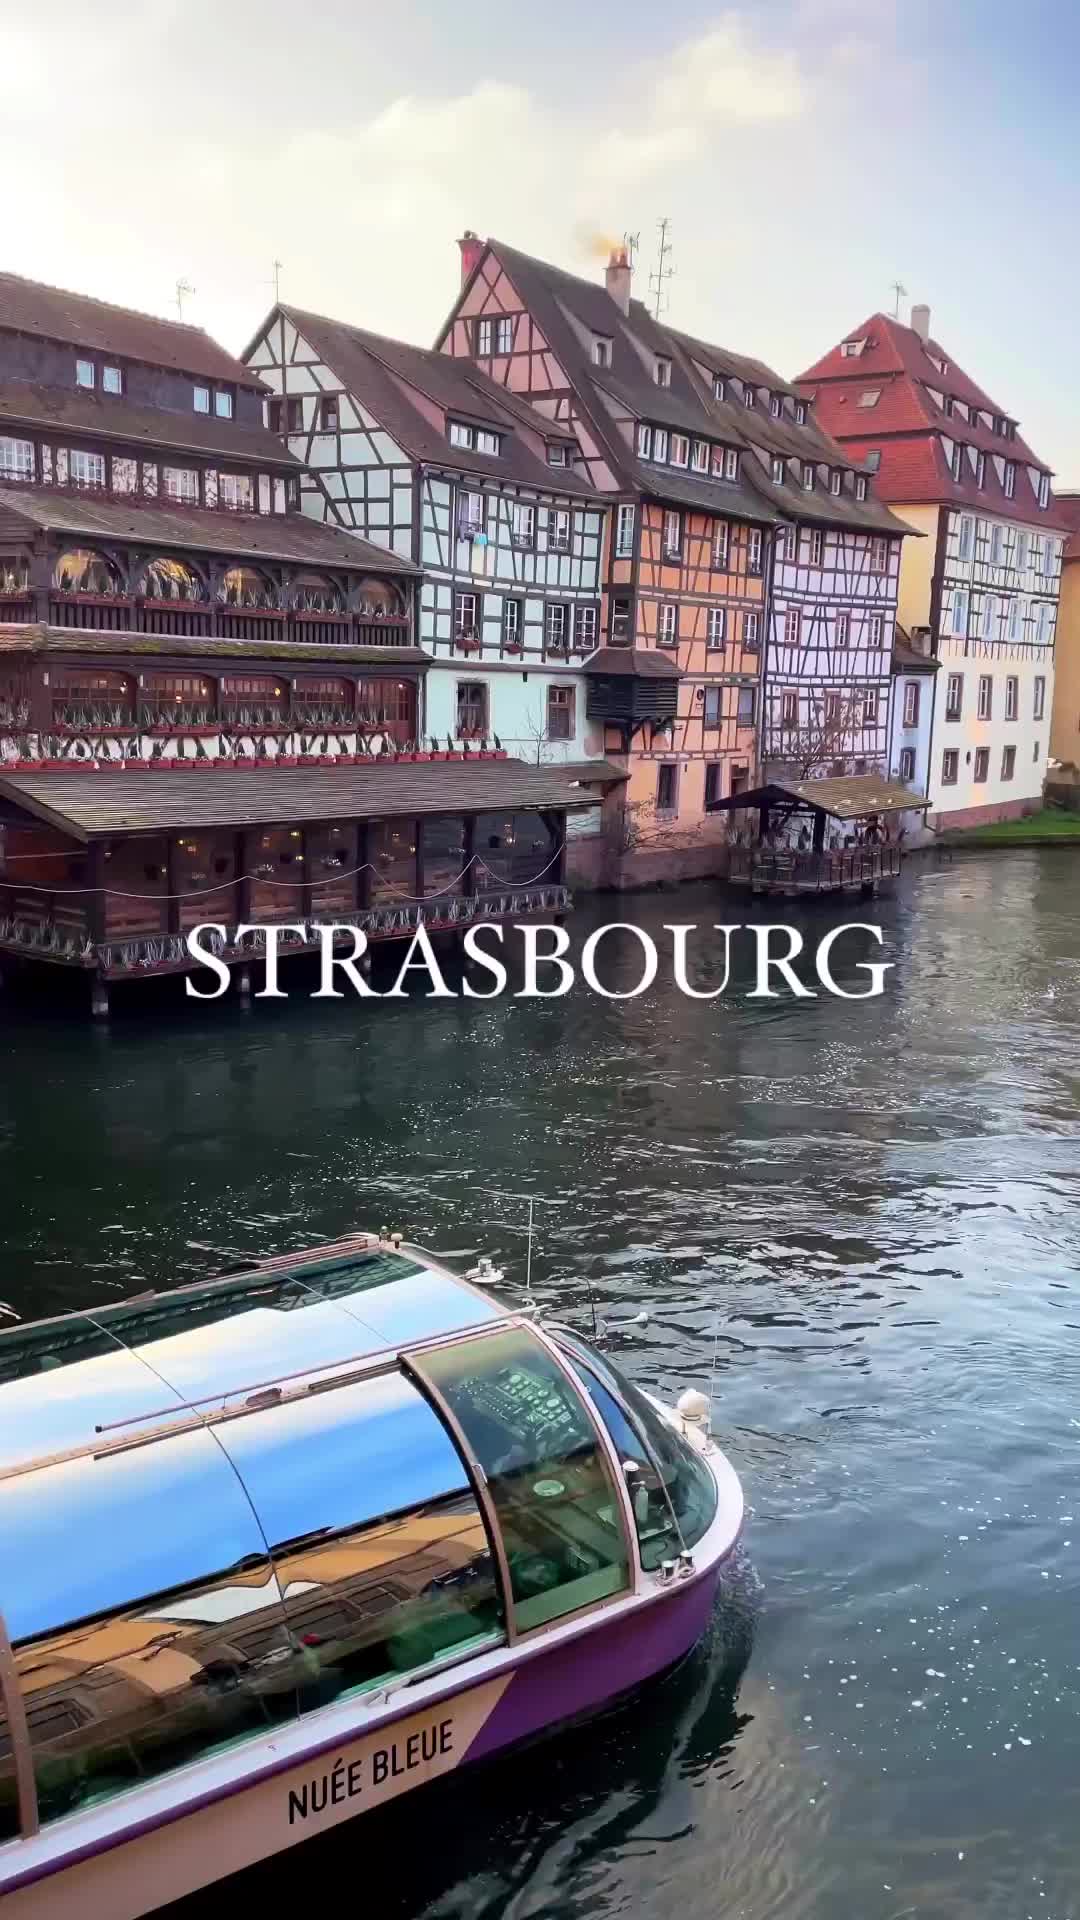 Strasbourg 💙🇫🇷

Ville jeune et dynamique, Strasbourg est la capitale européenne, la capitale de l’Alsace mais aussi la capitale de Noël ! 
Si tu aimes le patrimoine, la culture et l’art de vivre tu ne pourras qu’aimer cette ville incroyable ! 🤩
Sans oublier les fameux bretzels 🥨😜

Avez-vous déjà visité Strasbourg? 🙂

#strasbourg #strasbourgtourisme #basrhin #passionpassport #travellingthroughtheworld #forbestravelguide #beautifuldestinations #map_of_europe #hello_france #francetourisme #explorefrance #jaimelafrance #alsace #alsacetourisme #merveillesdefrance #visitstrasbourg #alsacemylove #france #tourismefrance #francia